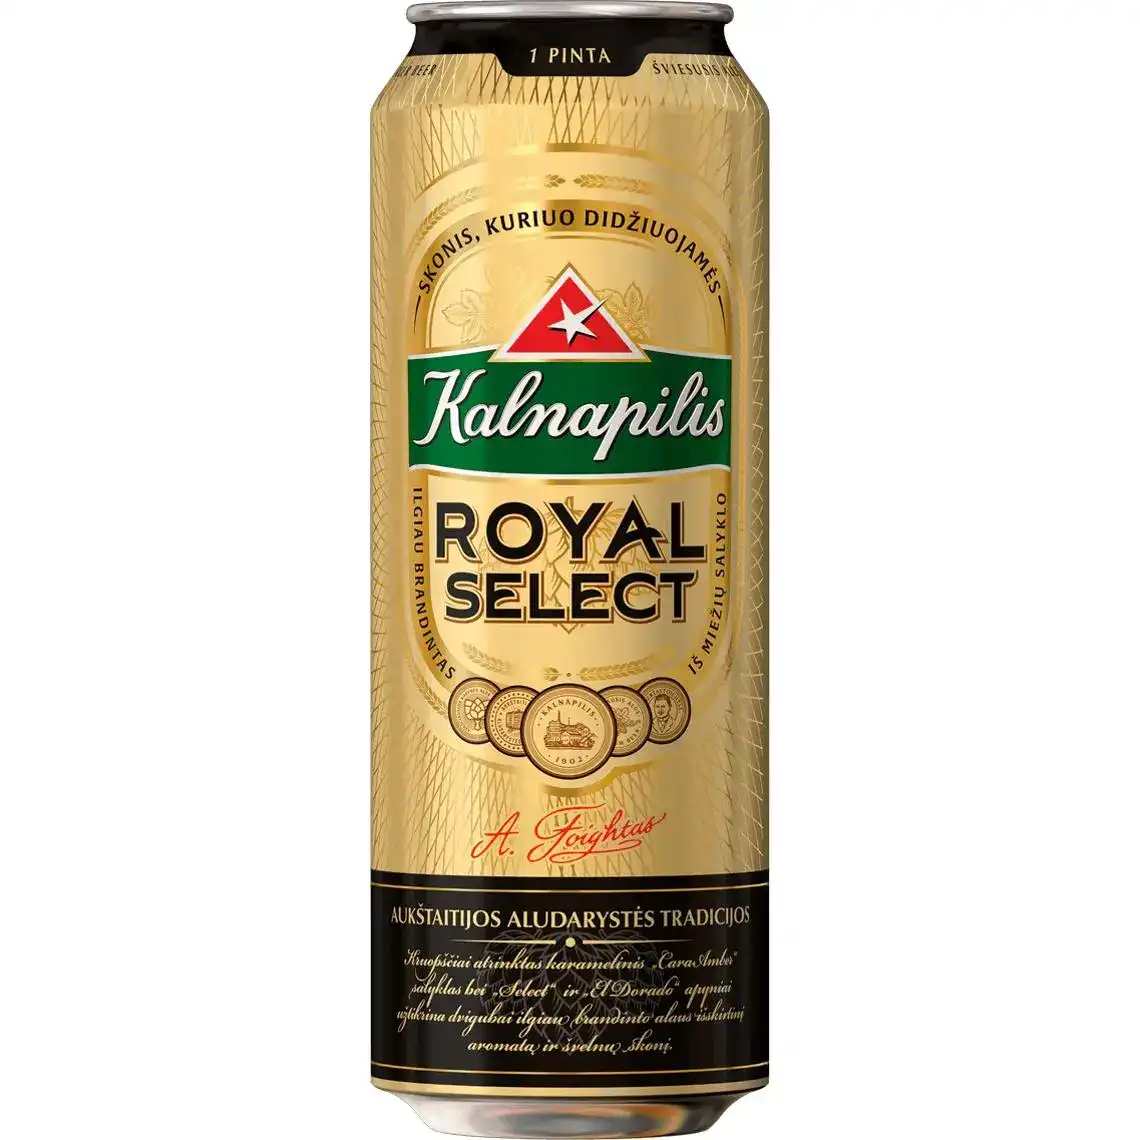 Фото 1 - Пиво Kalnapilis Royal Select світле фільтроване 5.6% 0.568 л